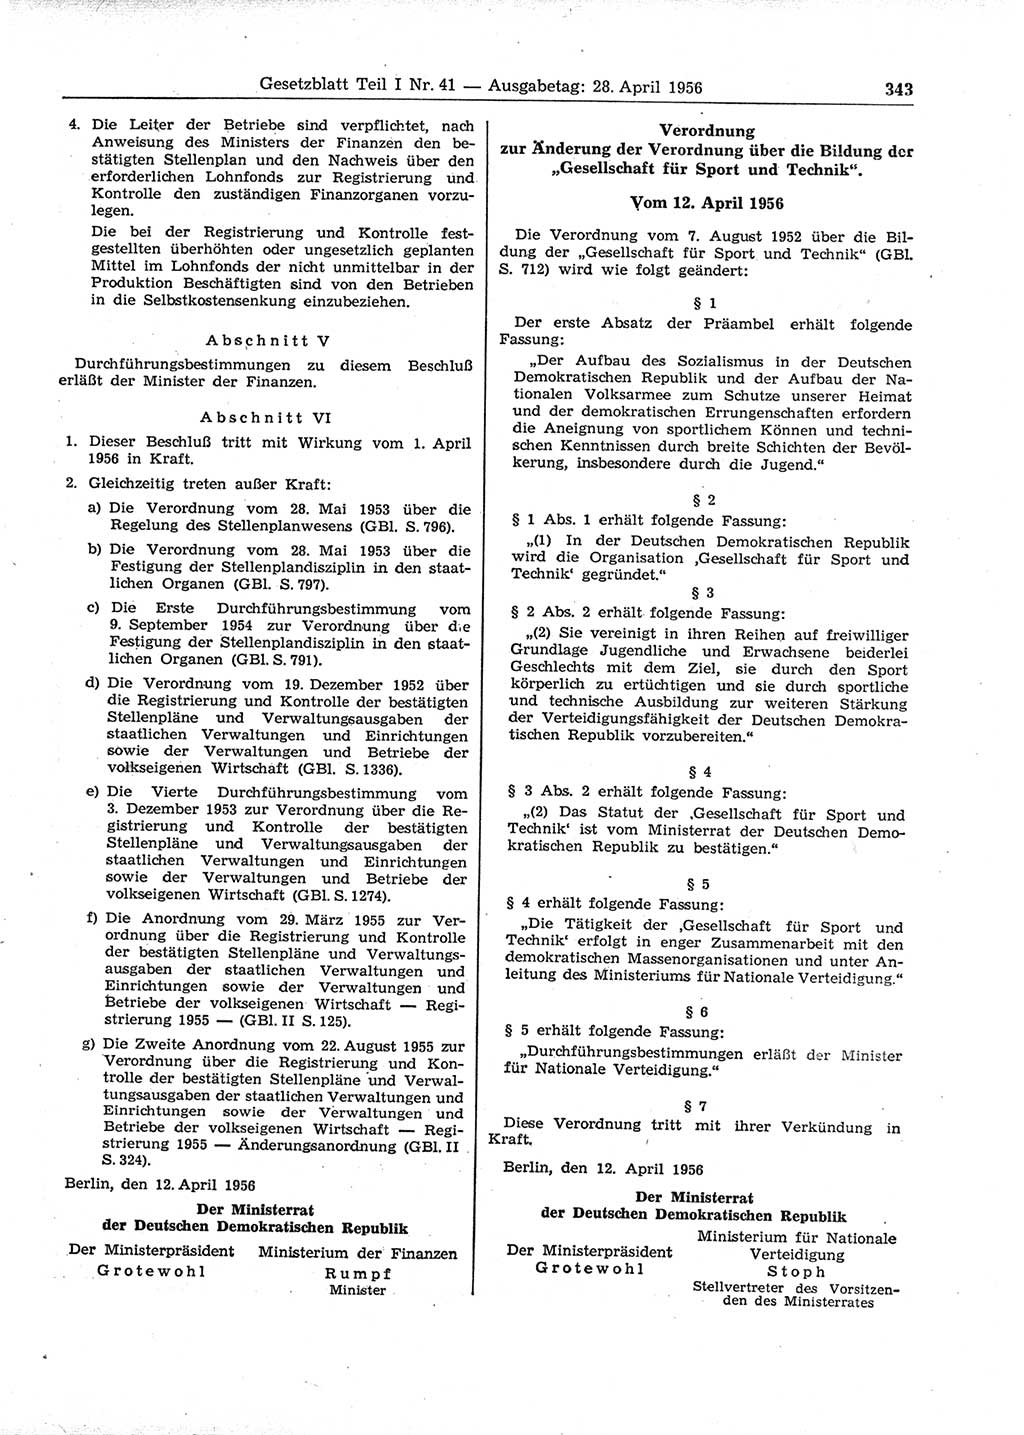 Gesetzblatt (GBl.) der Deutschen Demokratischen Republik (DDR) Teil Ⅰ 1956, Seite 343 (GBl. DDR Ⅰ 1956, S. 343)